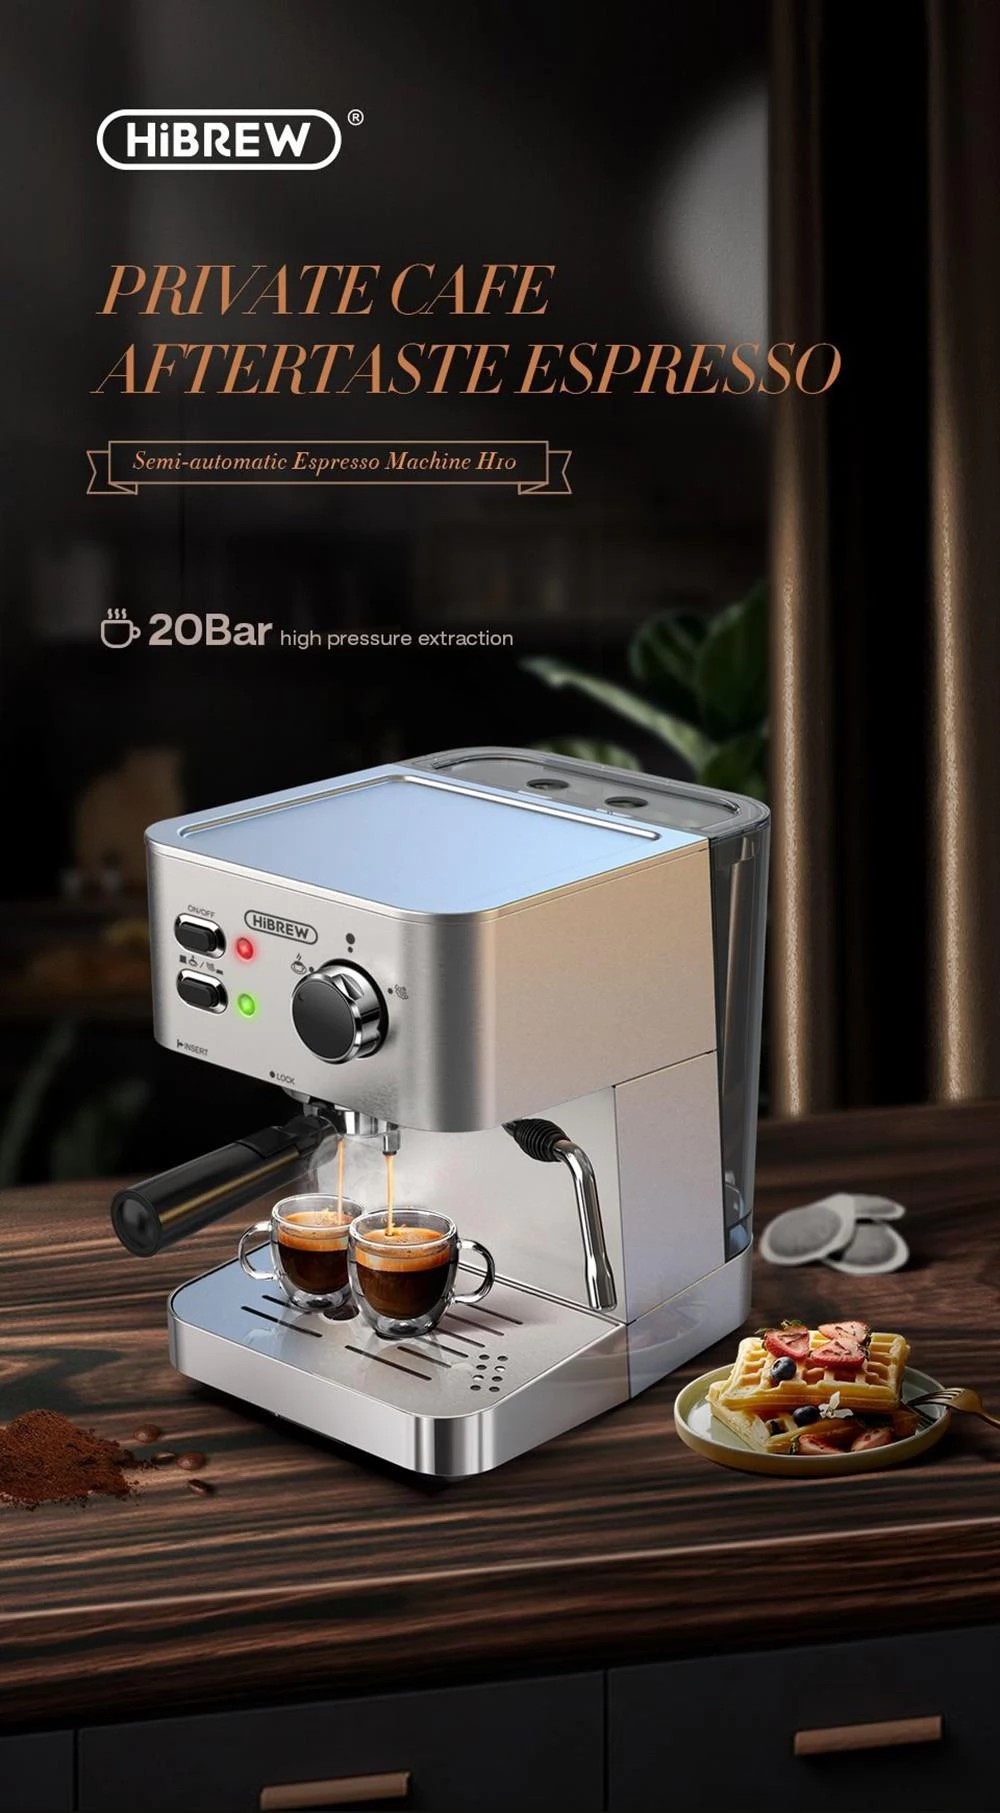 Machine à café semi-automatique italienne, 19 bars, presse-agrumes manuel, Machine  à café expresso - AliExpress